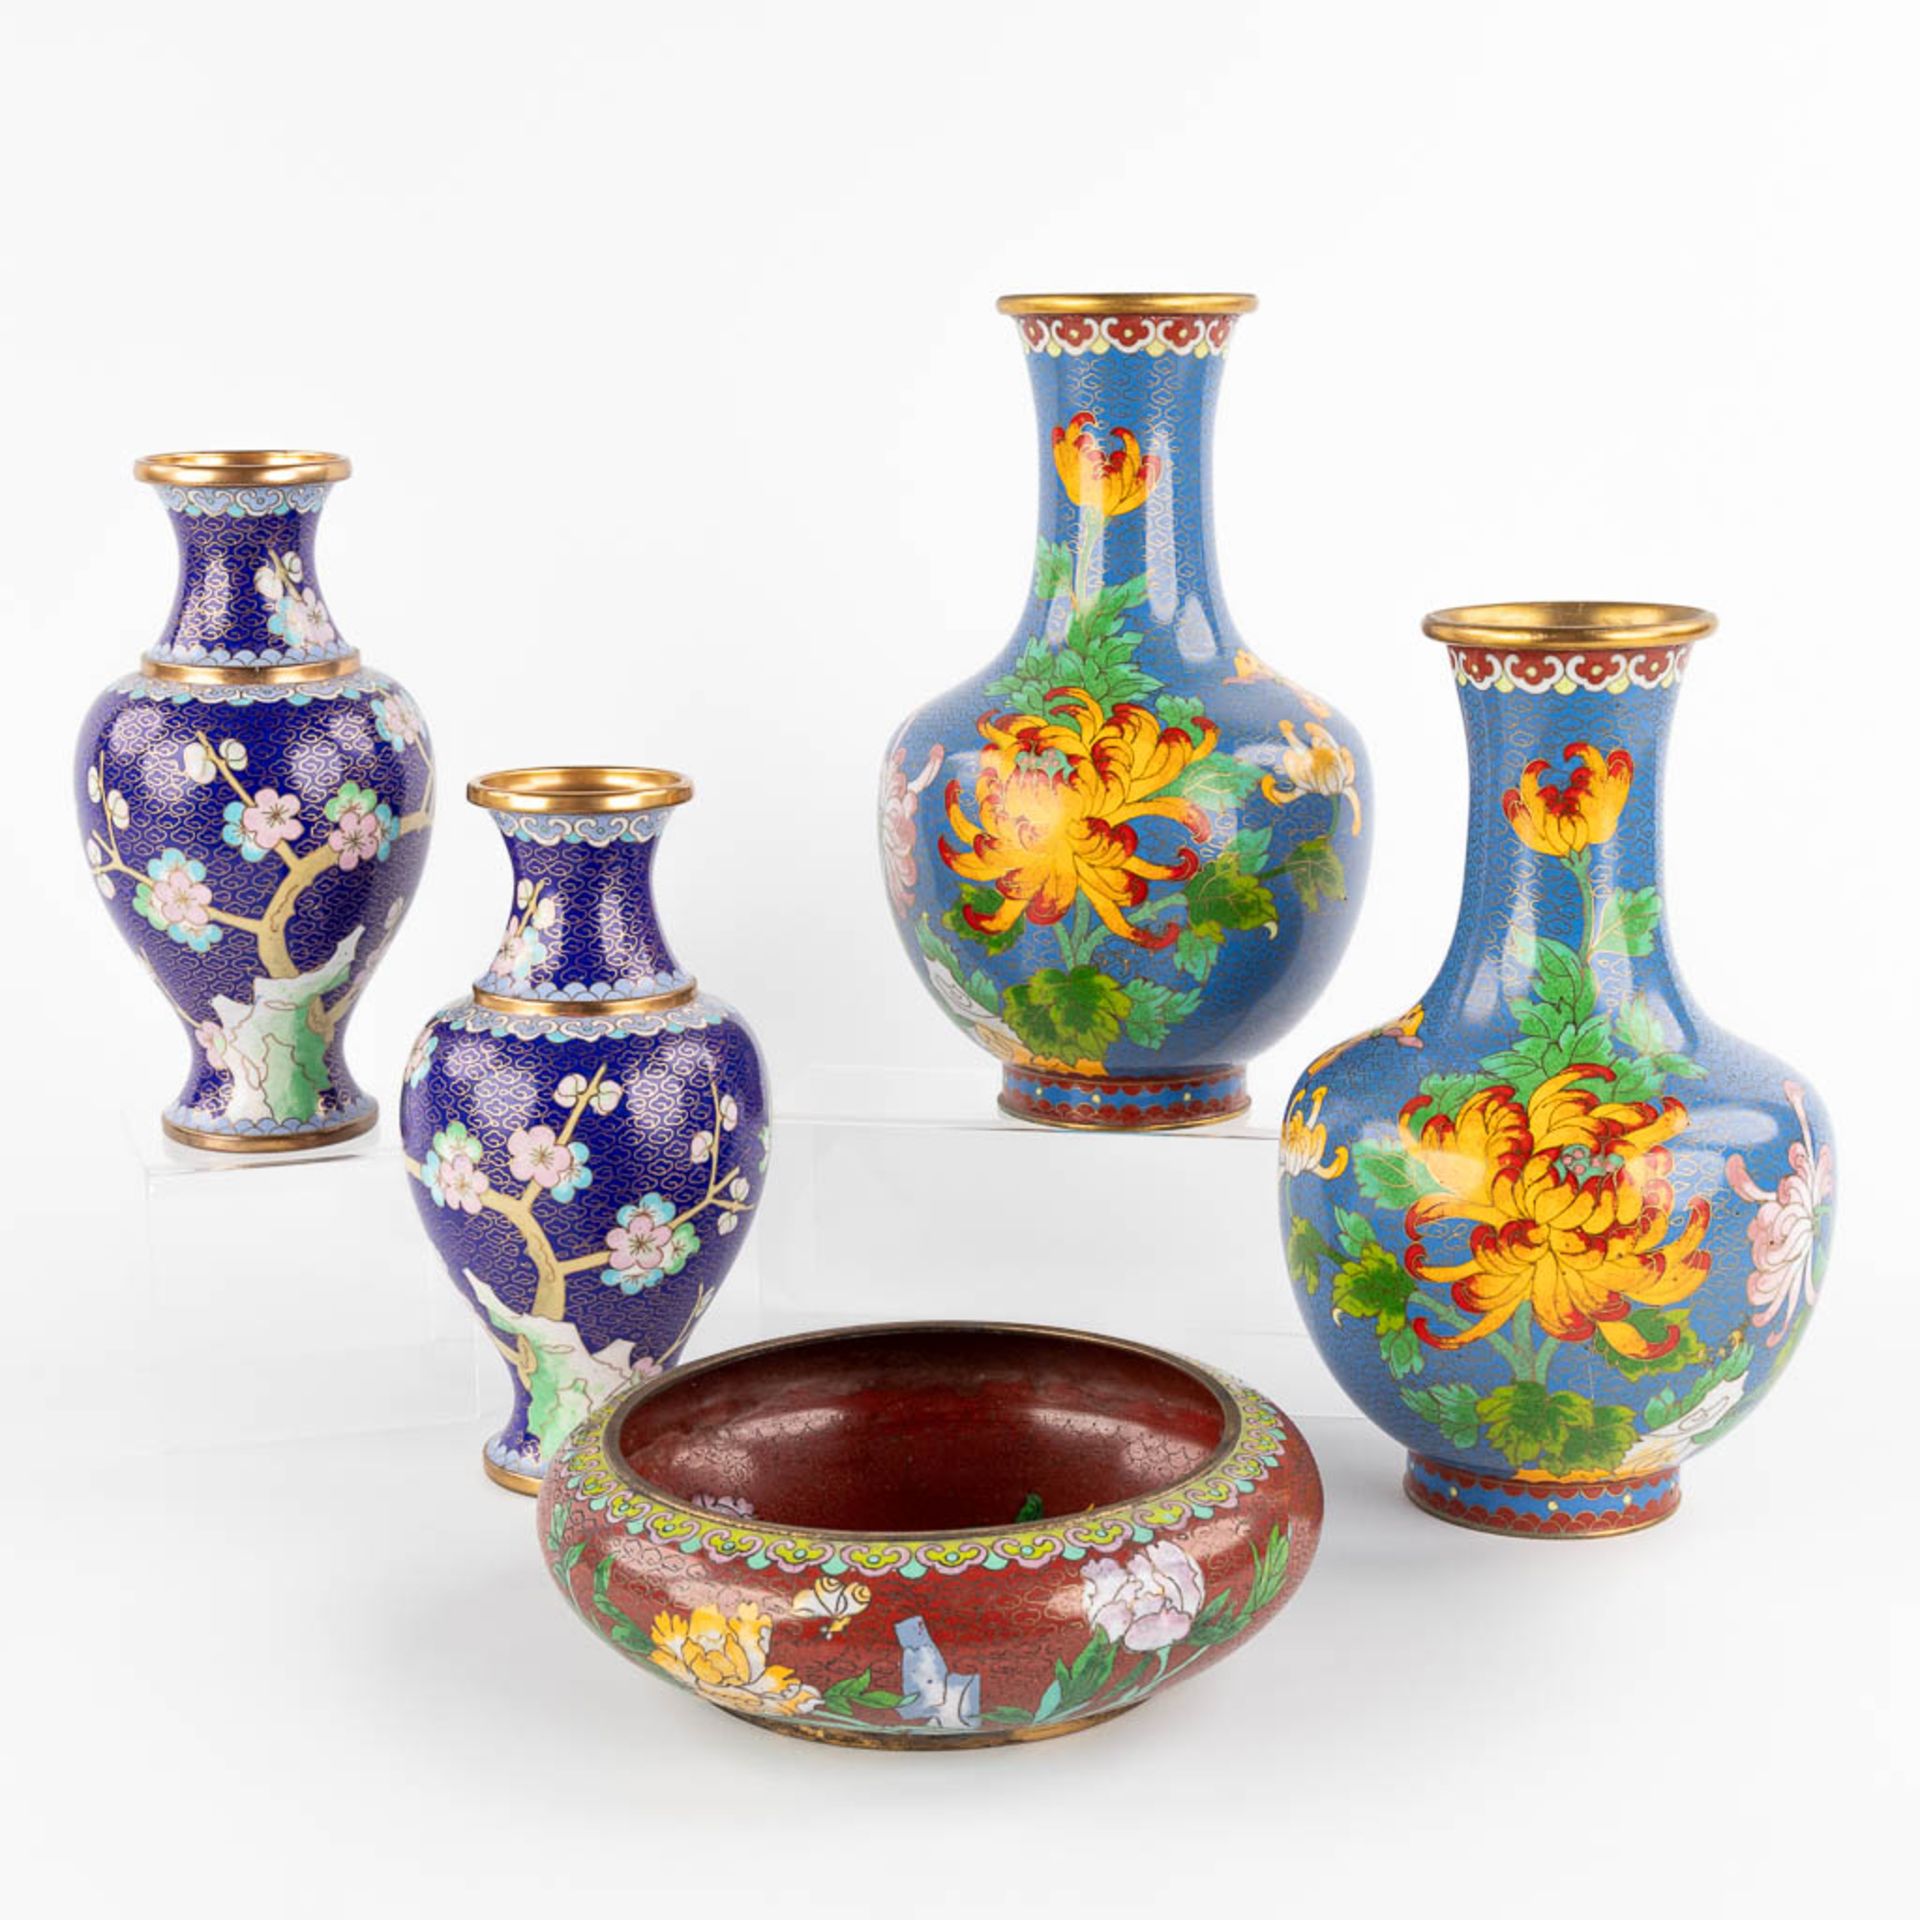 Five Oriental vases, cloisonné bronze. 20th C. (H:25 cm)